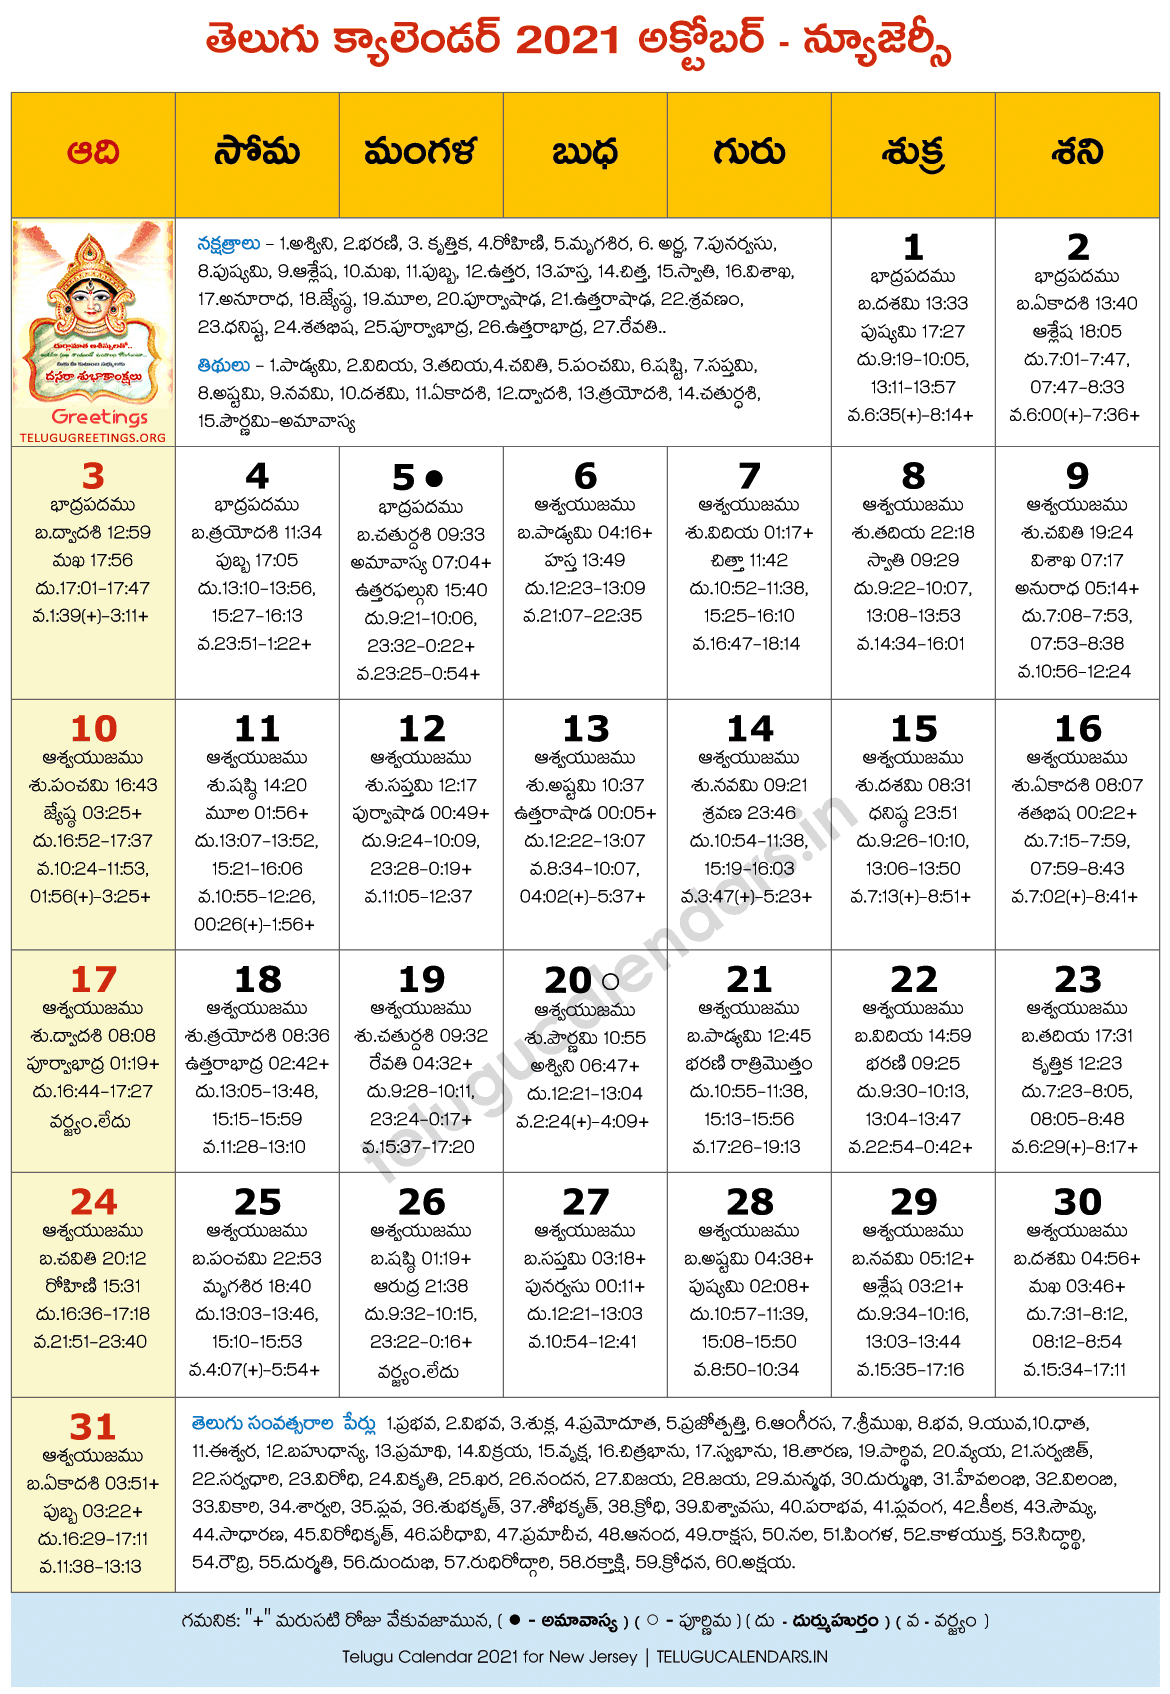 Telugu Calendar 2022 New Jersey - August Calendar 2022